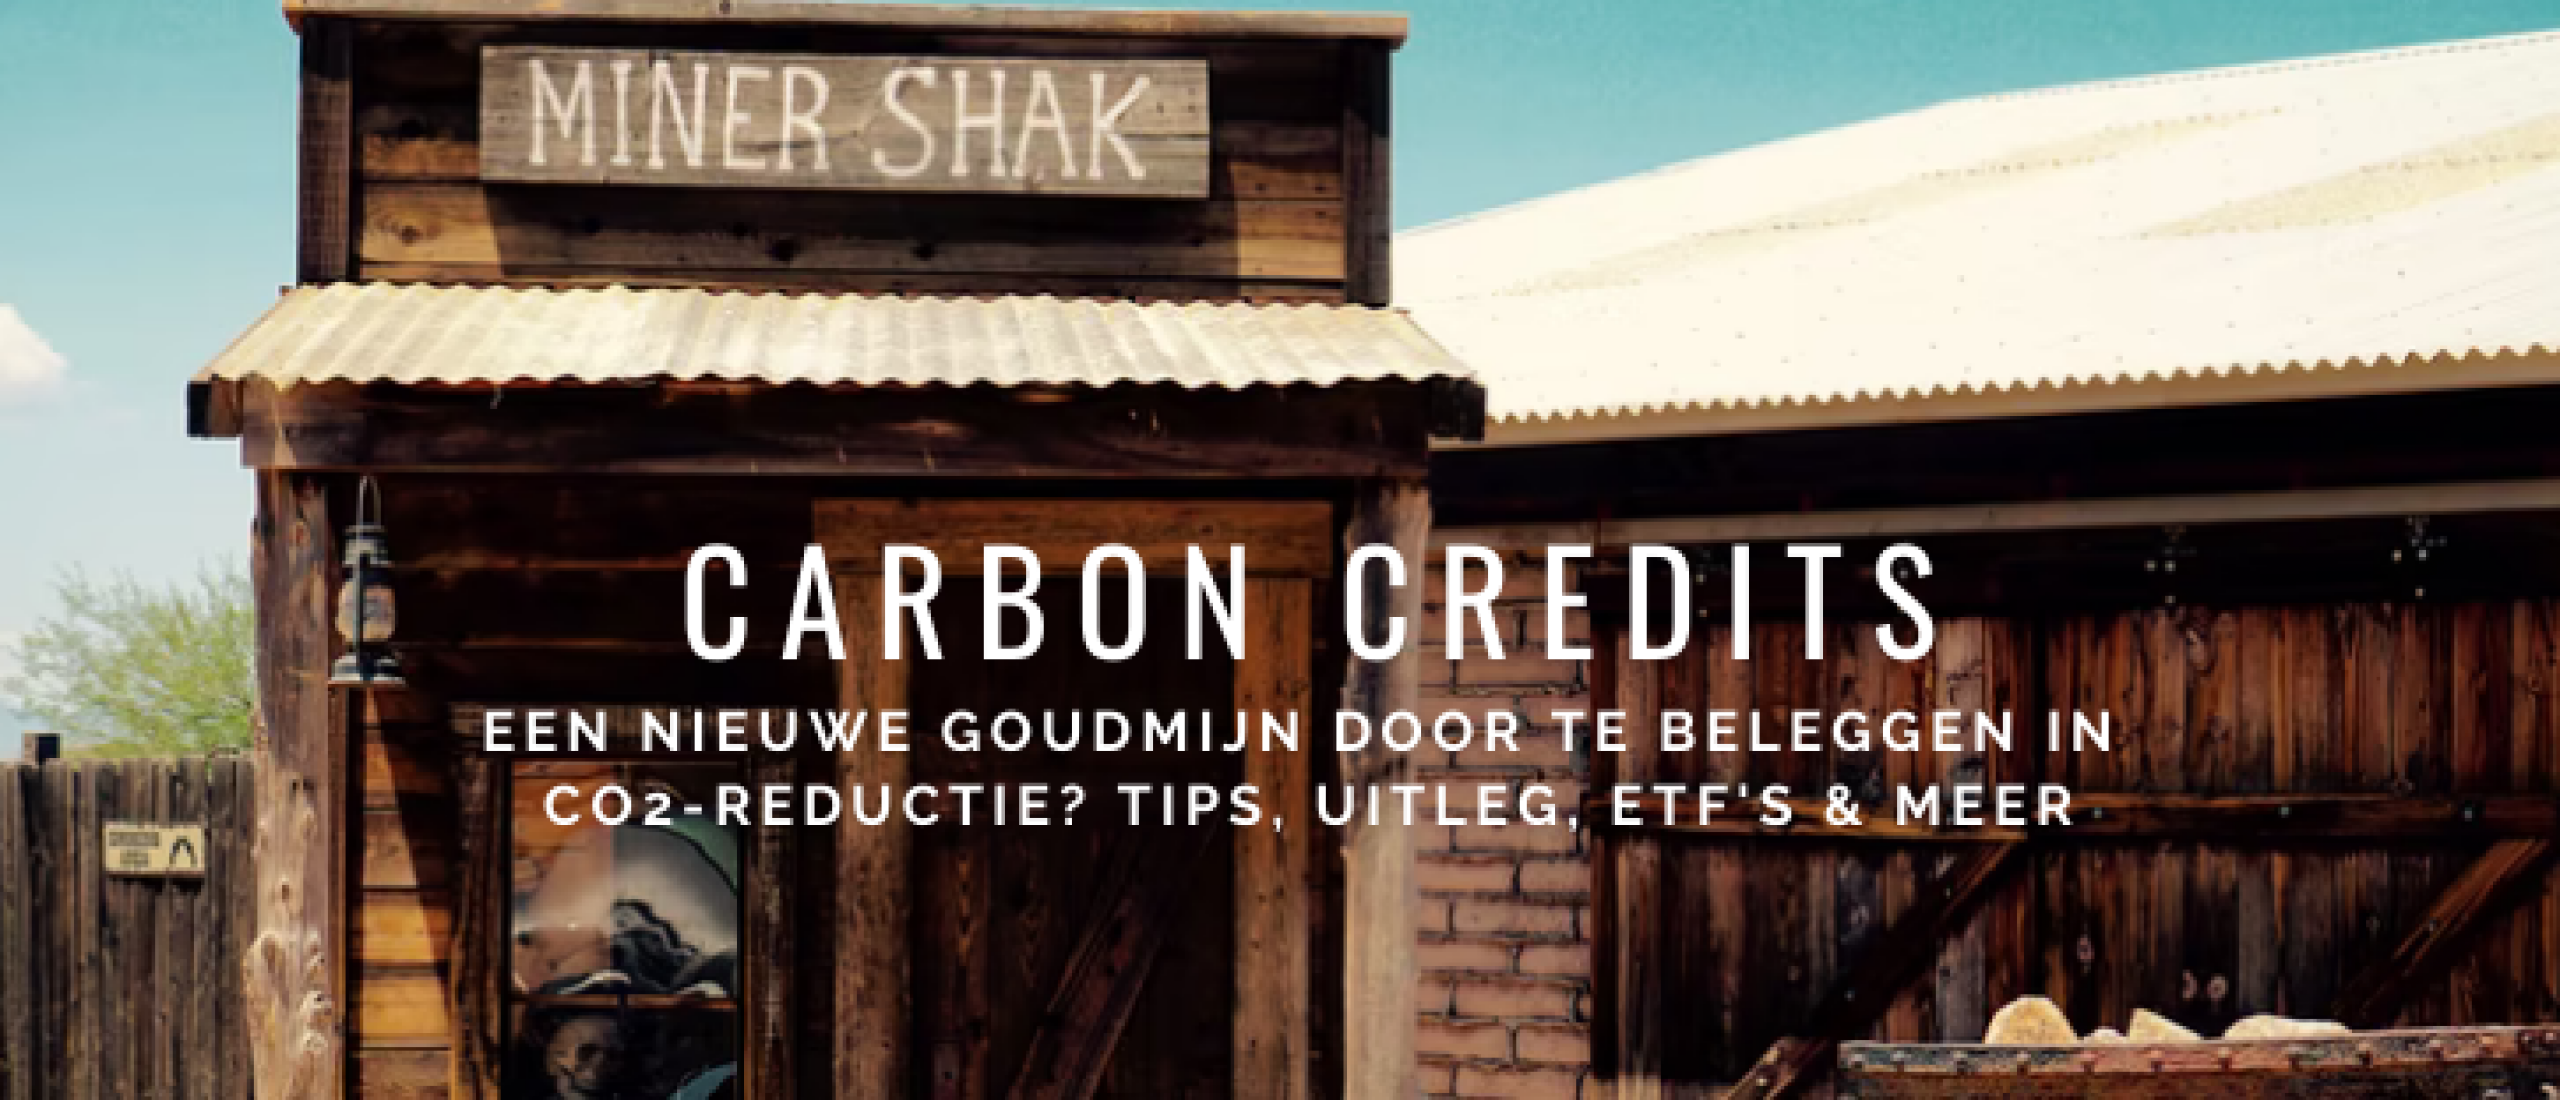 Beleggen in Carbon Credits: CO2-goudmijn? Tips & ETF’s